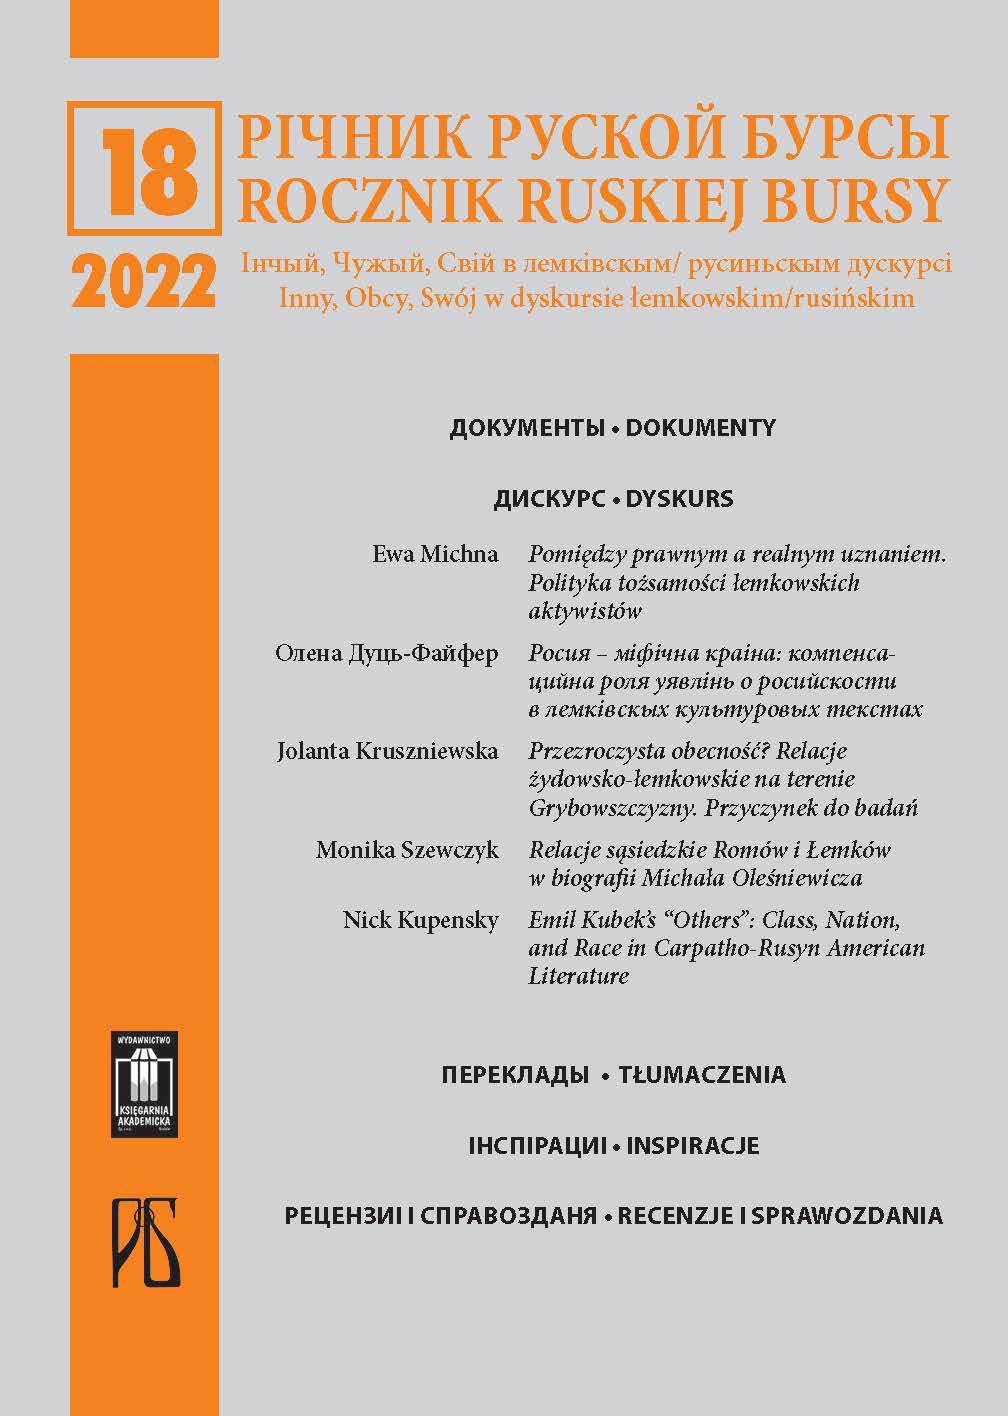 					View Vol. 18 (2022): Inny, Obcy, Swój w dyskursie łemkowskim/rusińskim
				